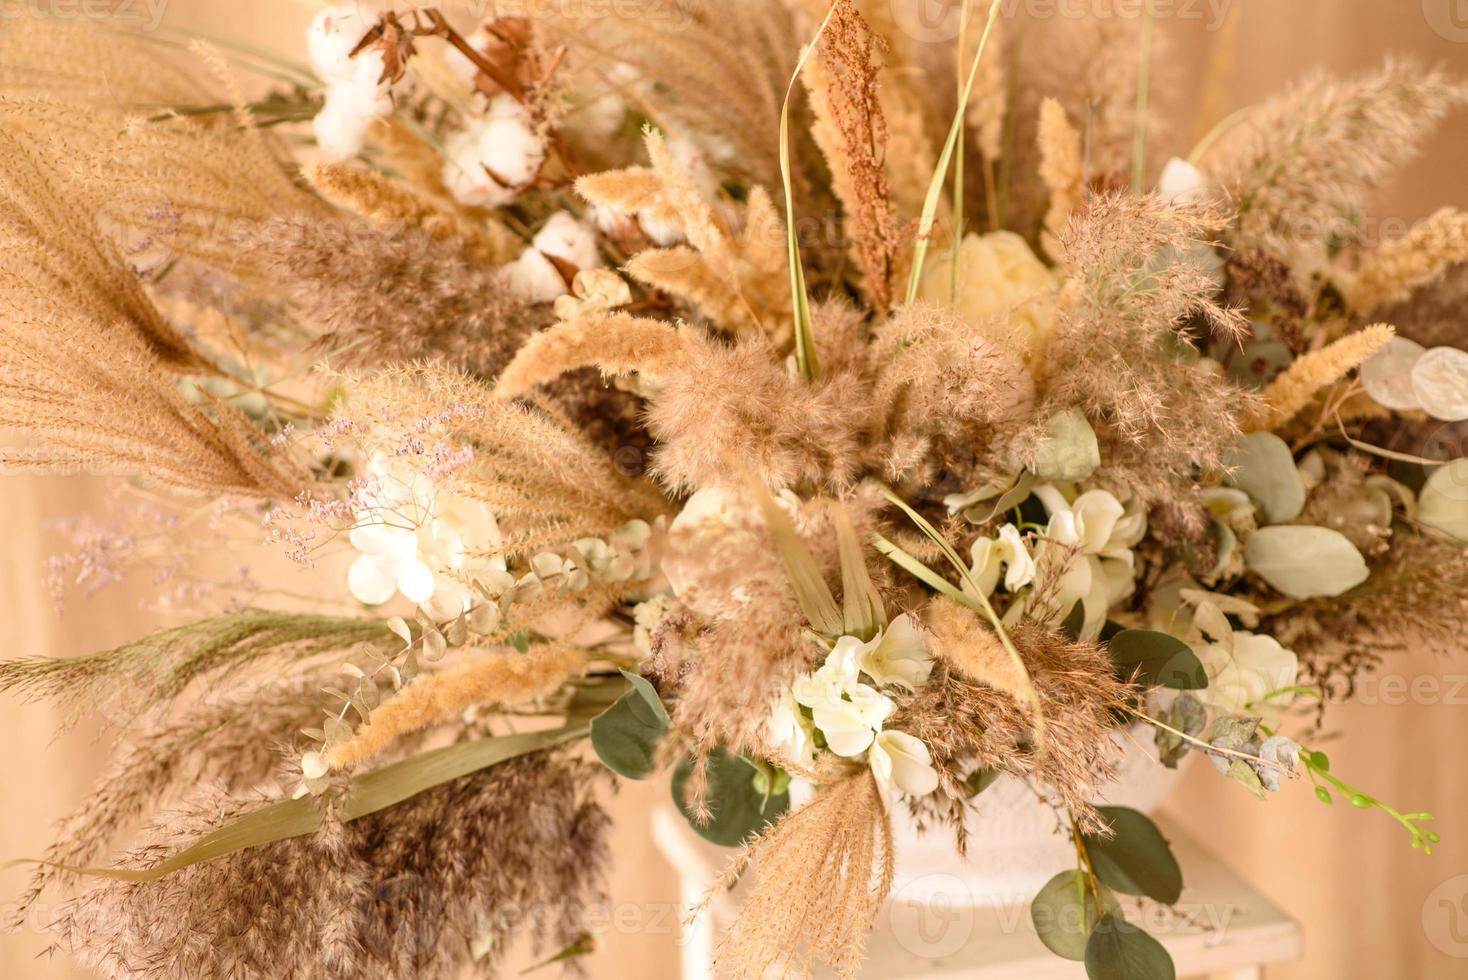 dekorationer från torra vackra blommor i en vit vas på en beige tygbakgrund foto